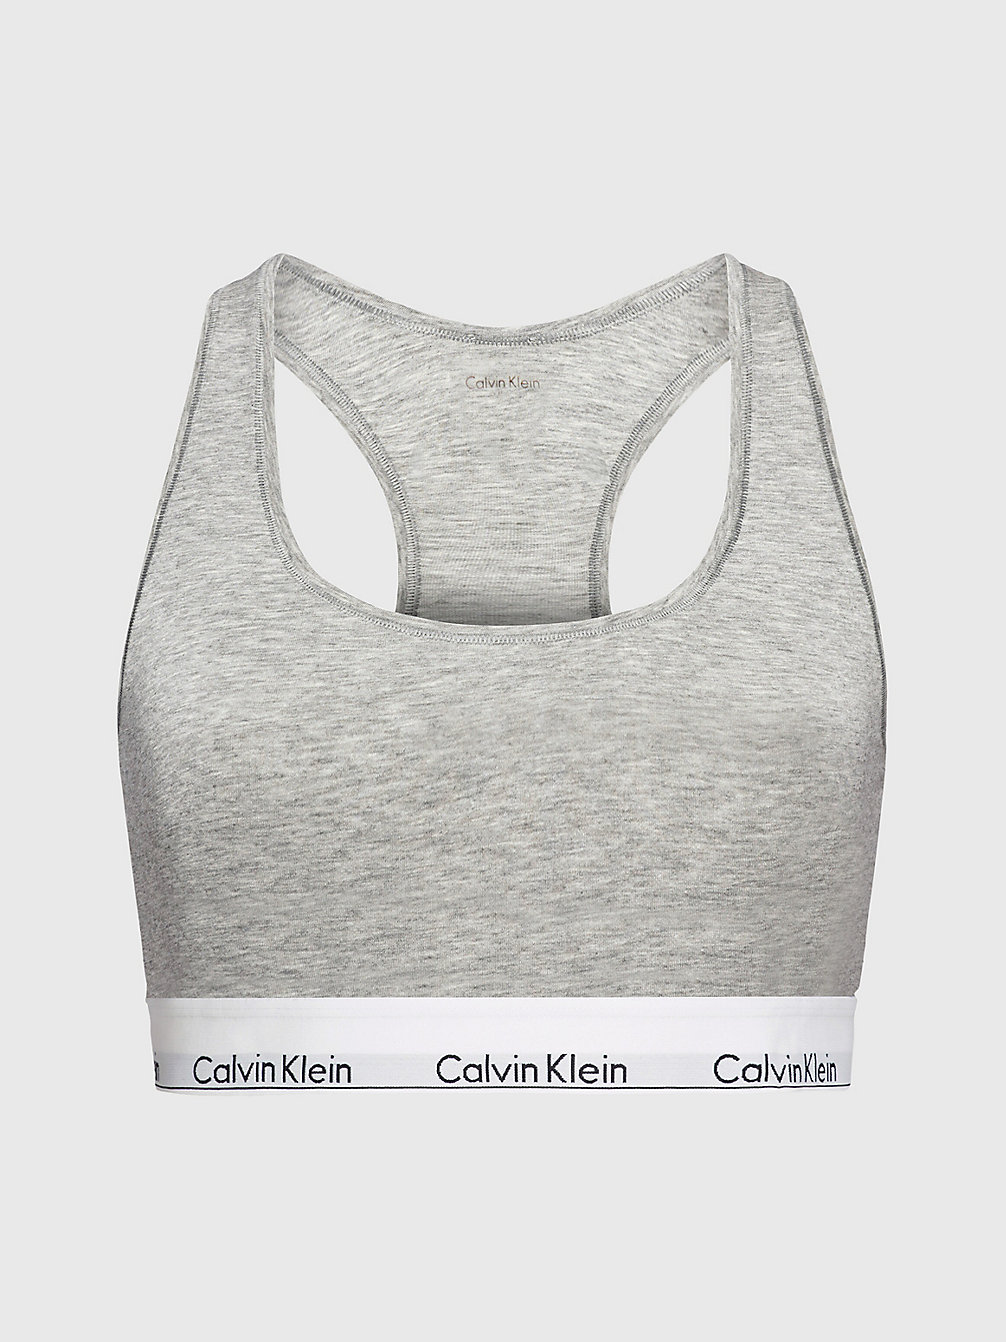 GREY HEATHER Plus Size Bralette - Modern Cotton undefined women Calvin Klein